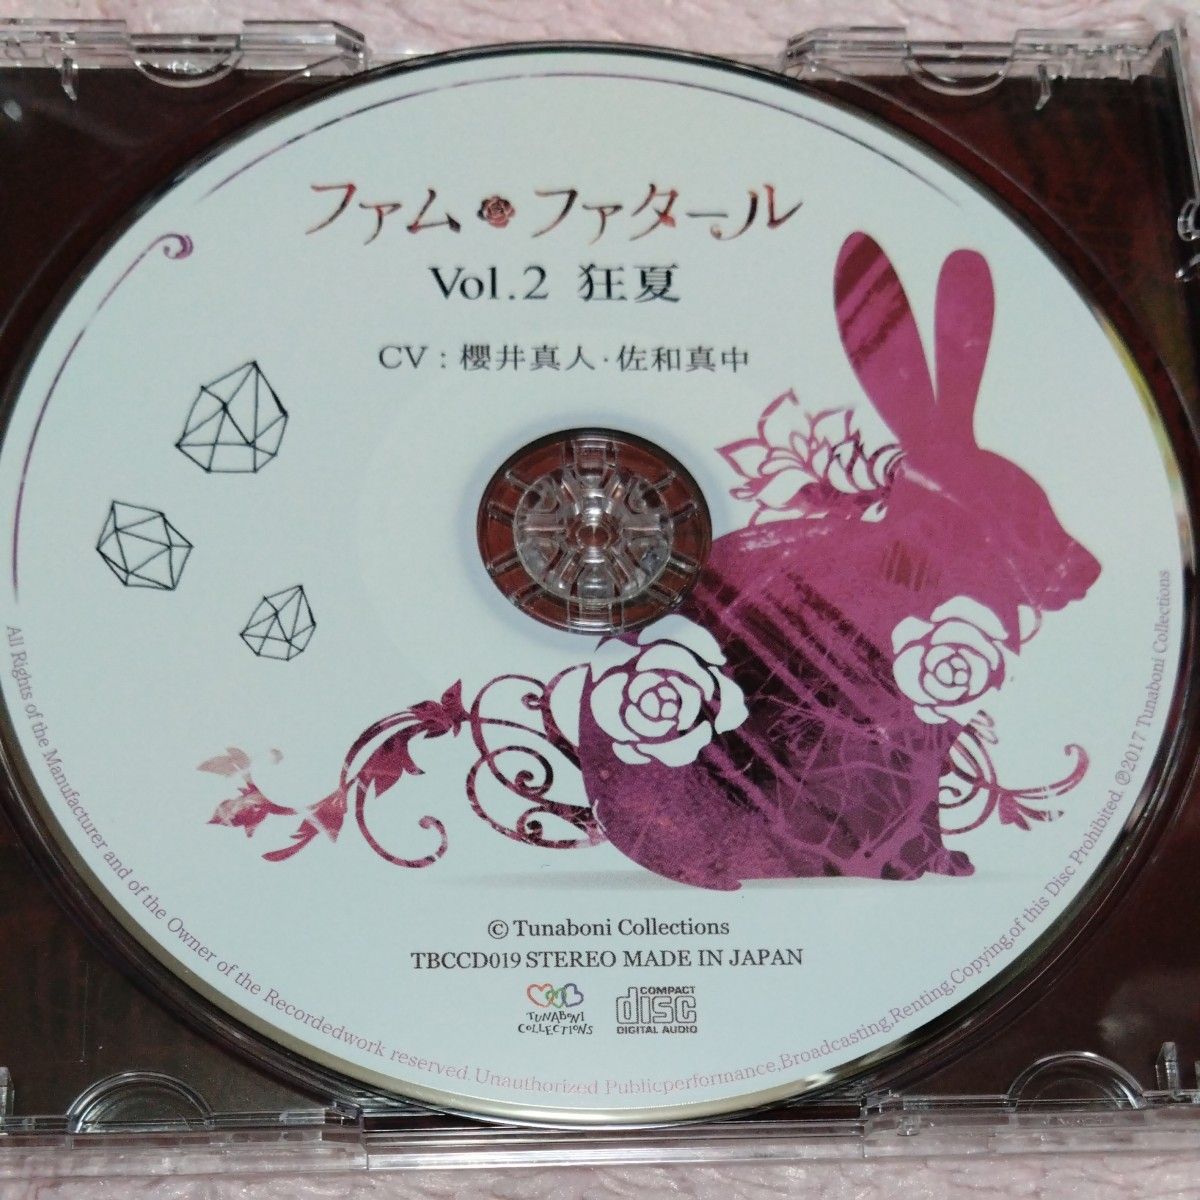 中古美品 シチュエーションCD ドラマCD ファム・ファタール vol.2 櫻井真人 佐和真中 